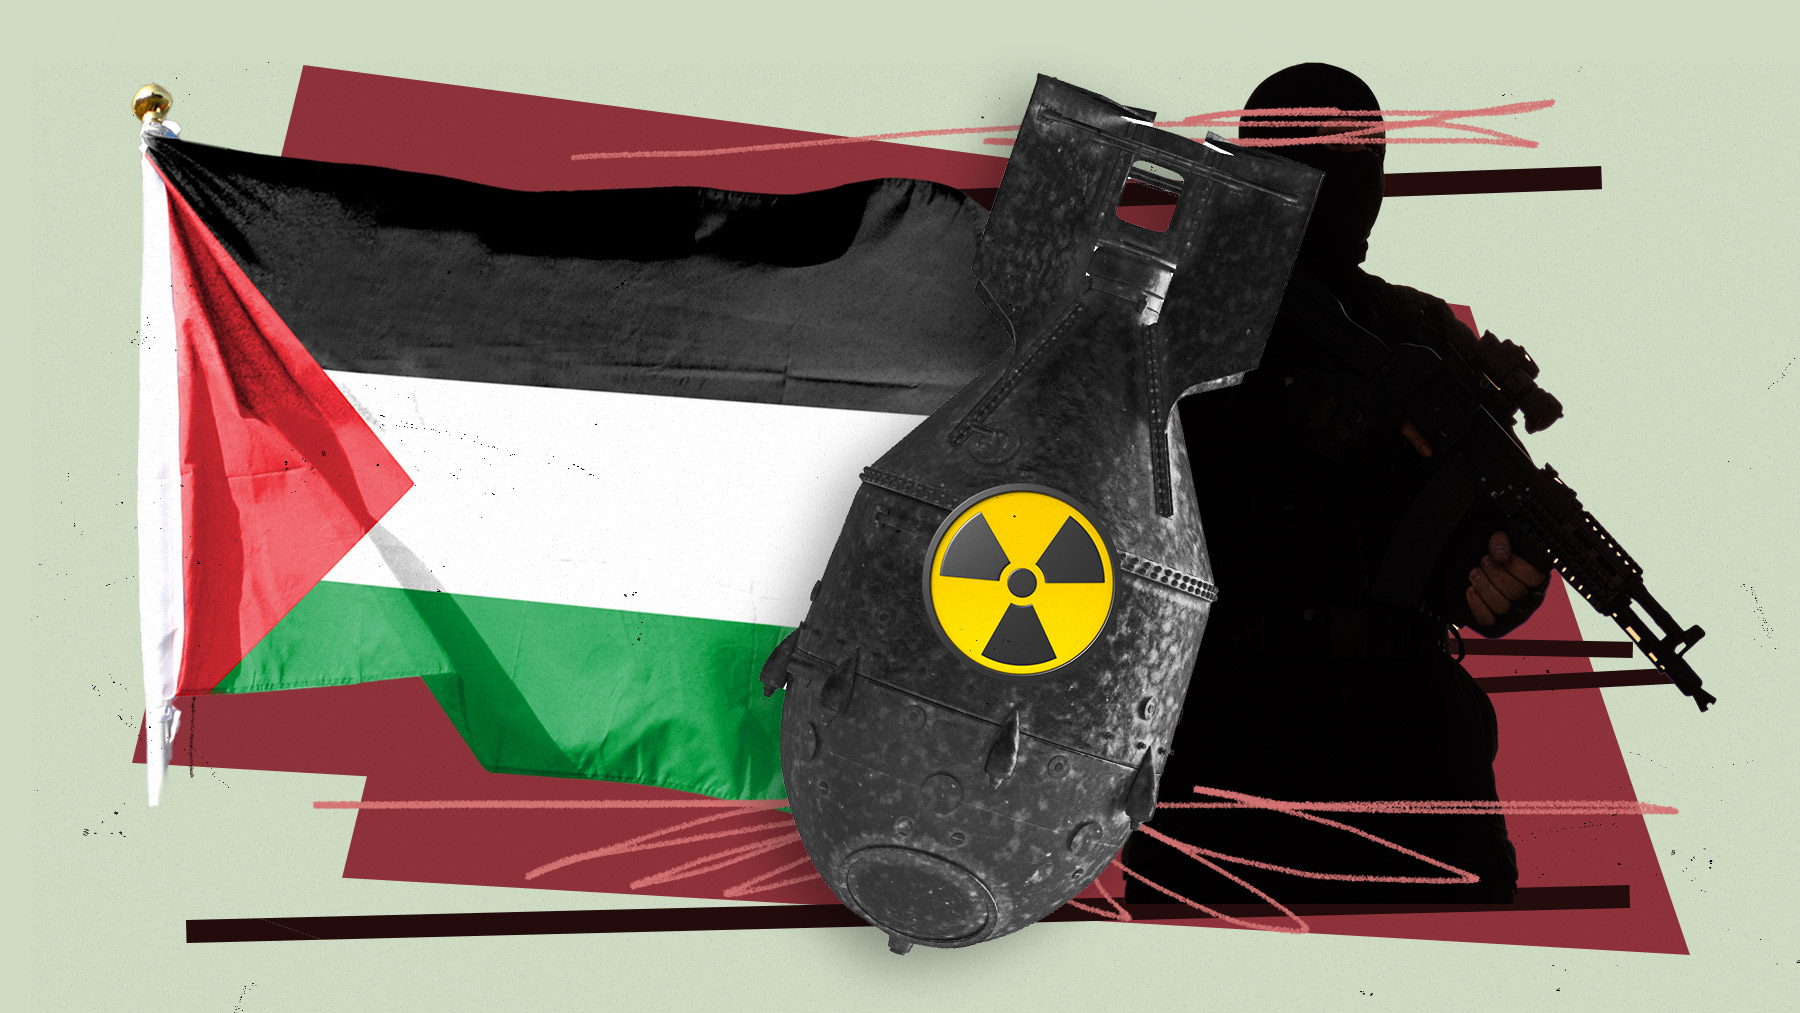 Expertos en Defensa advierten del riesgo de que el terrorismo palestino acceda a bombas nucleares.